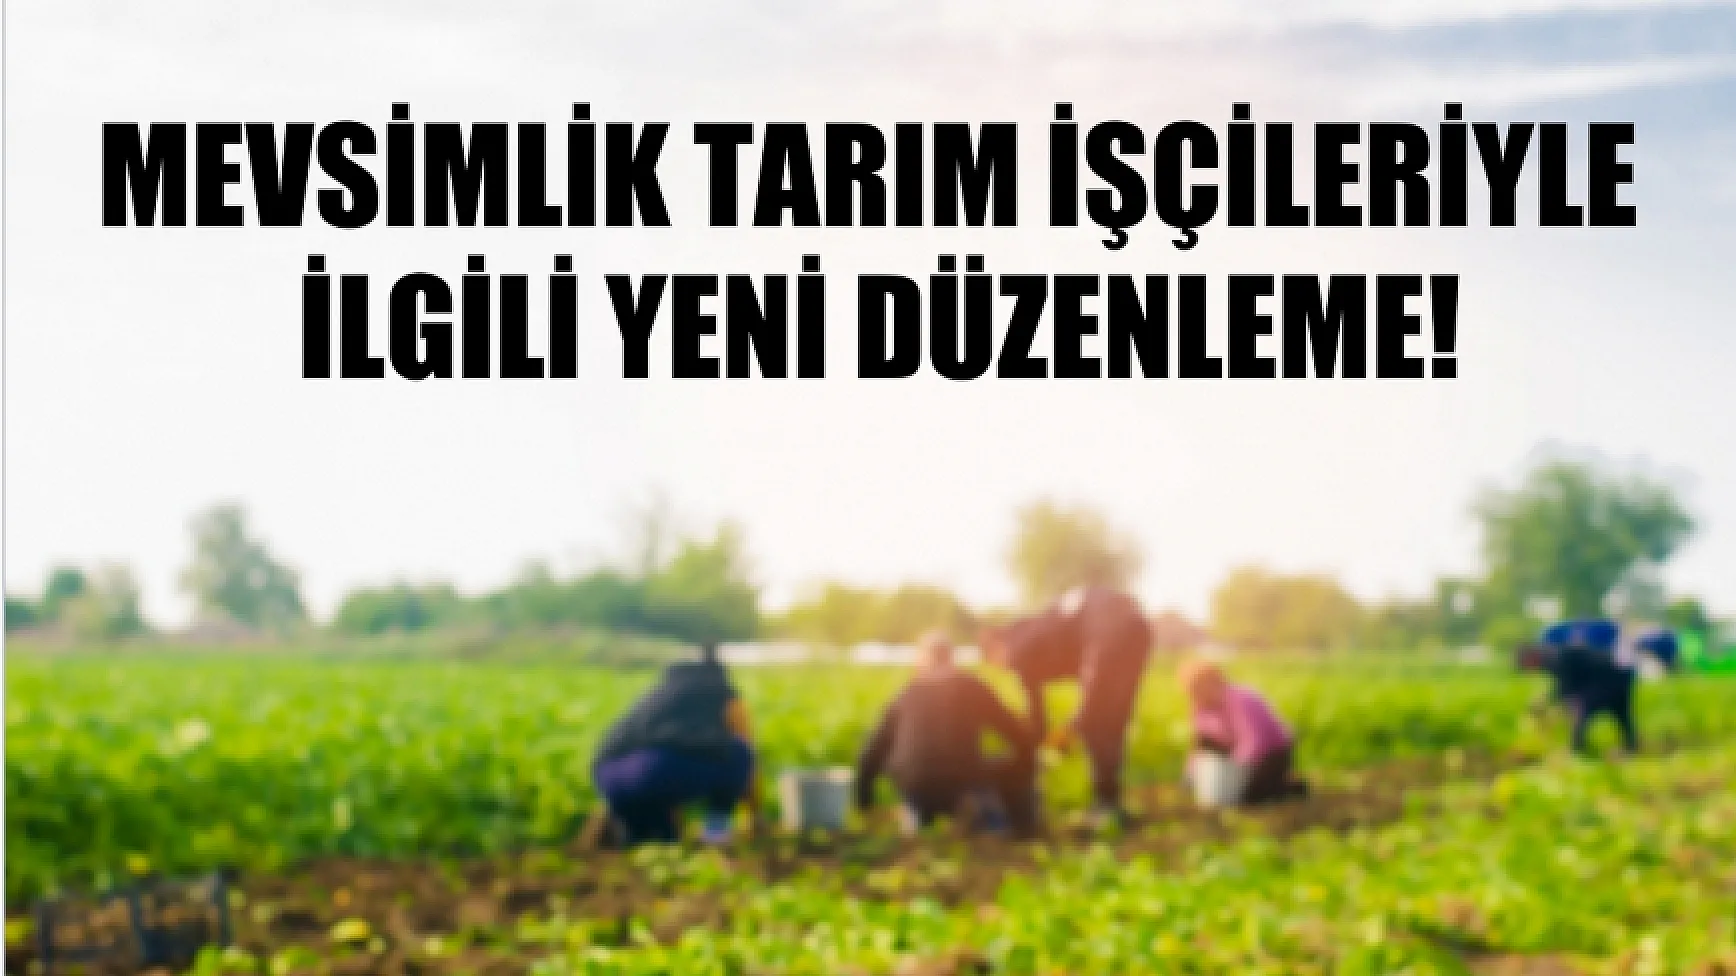 Erdoğan imzaladı: Mevsimlik tarım işçileriyle ilgili yeni düzenleme!